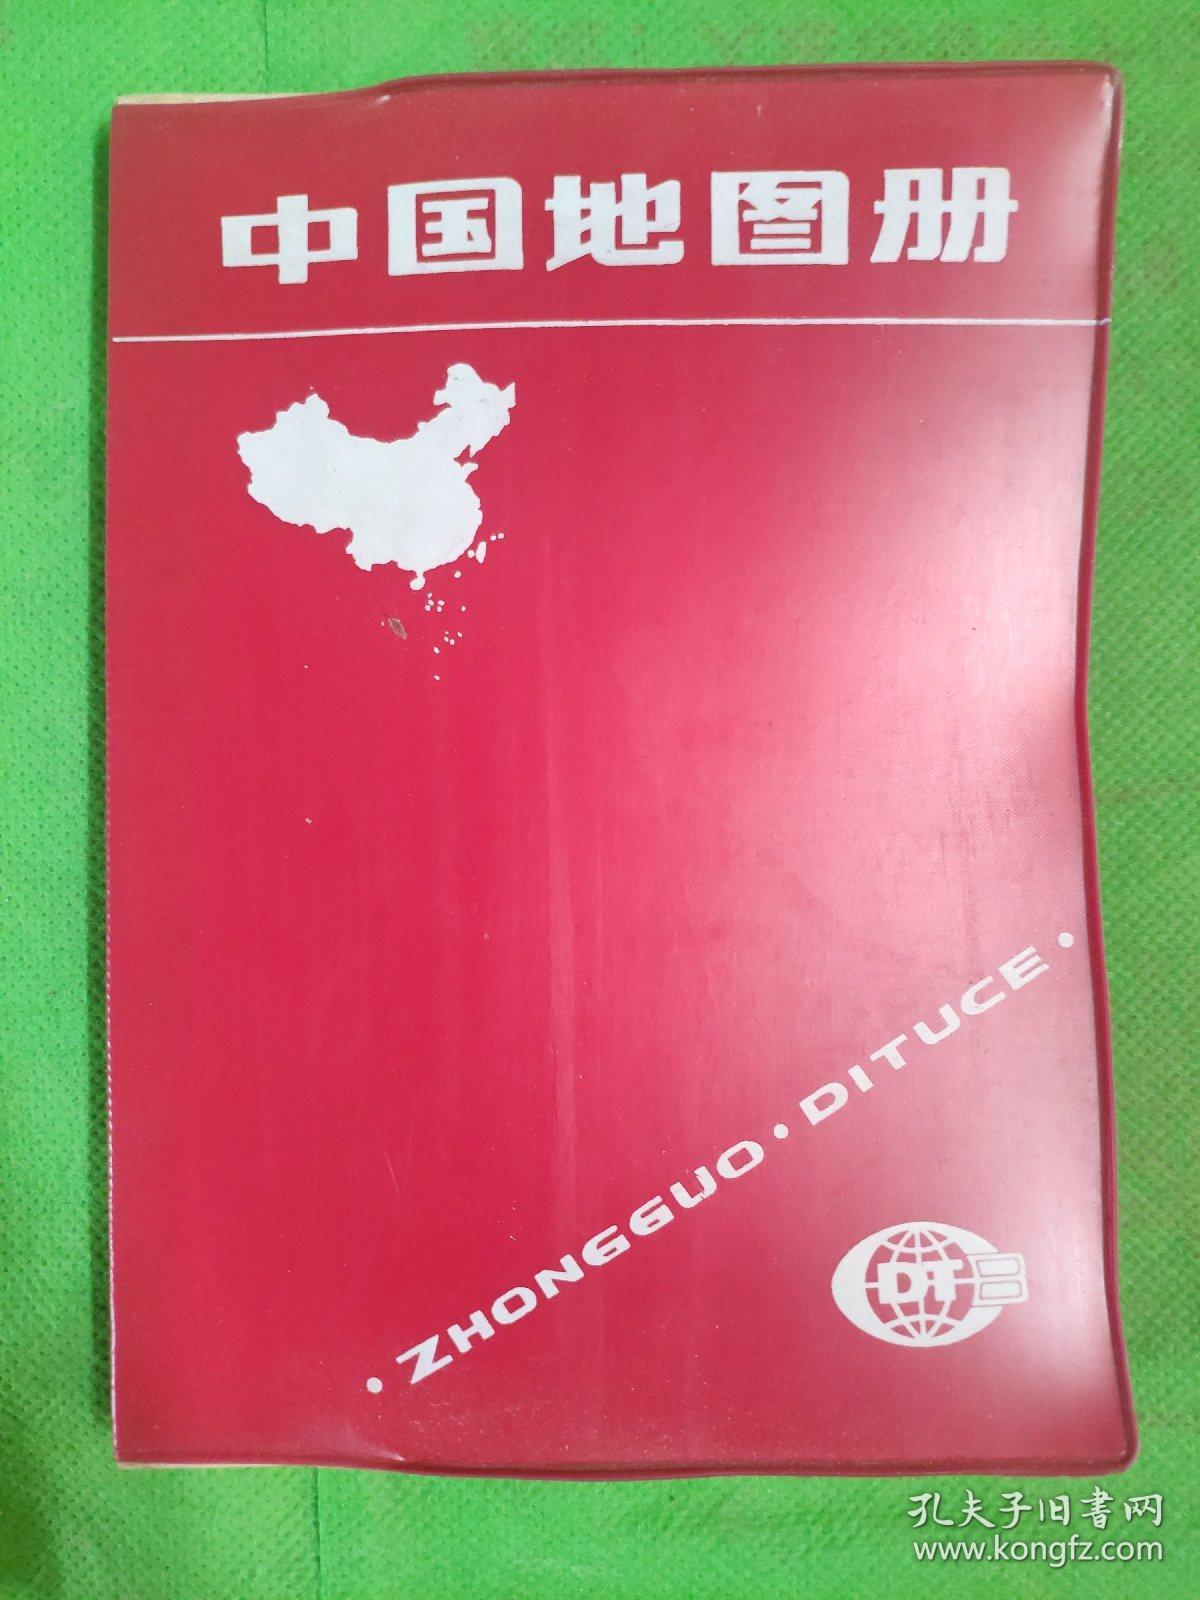 中国地图册
(有脱胶见图)